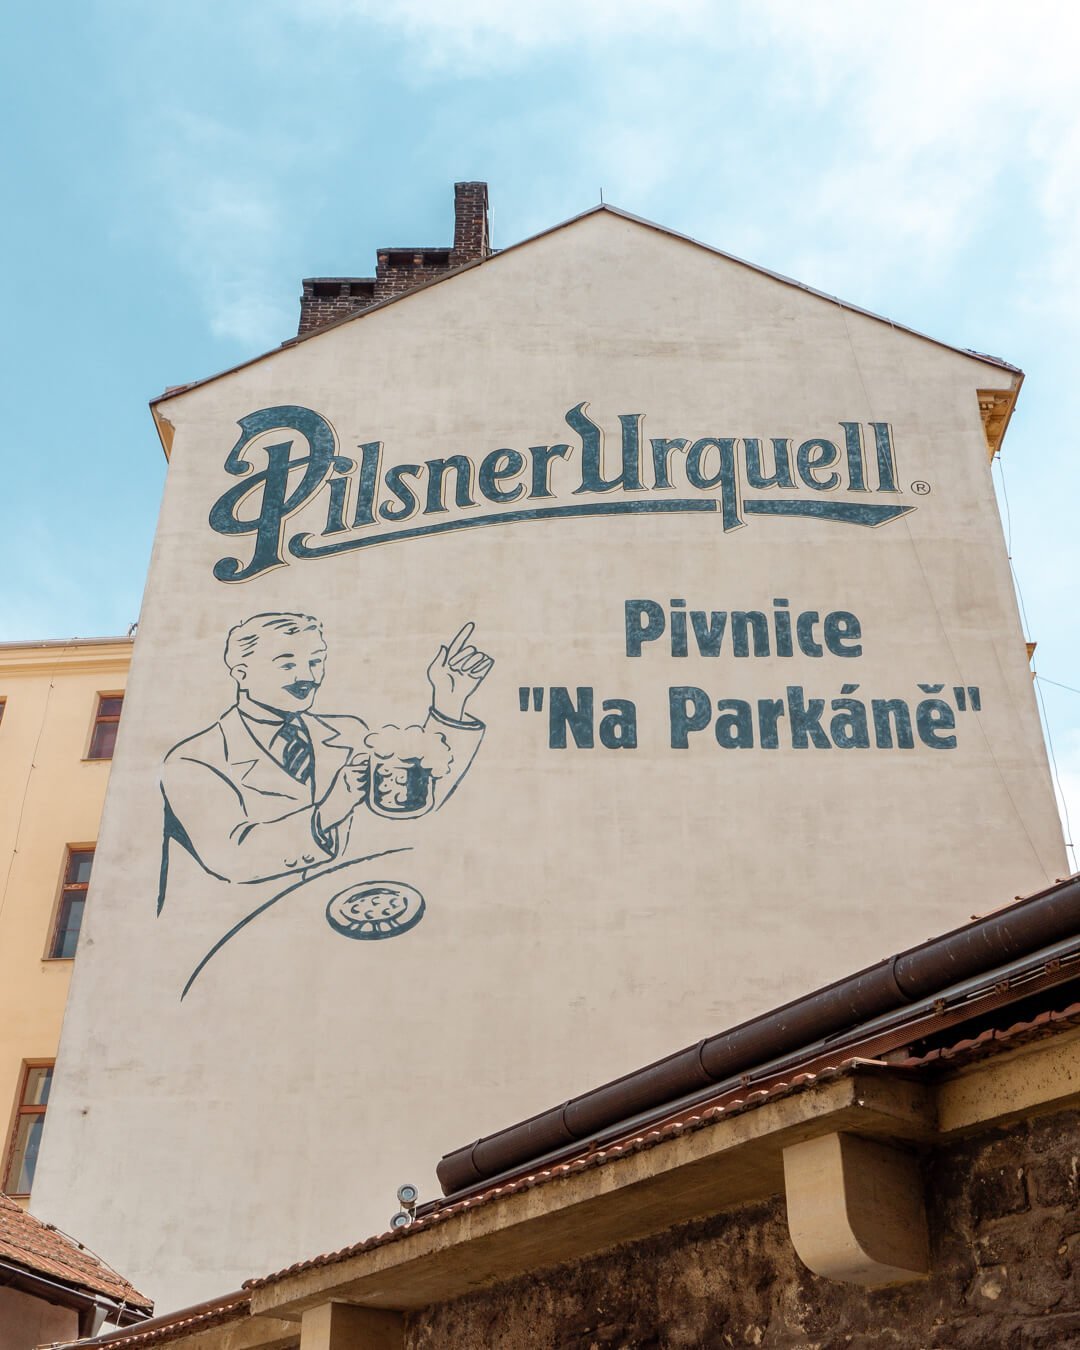 Beautiful Pilsner Urquell mural in Pilsen, Czech Republic.